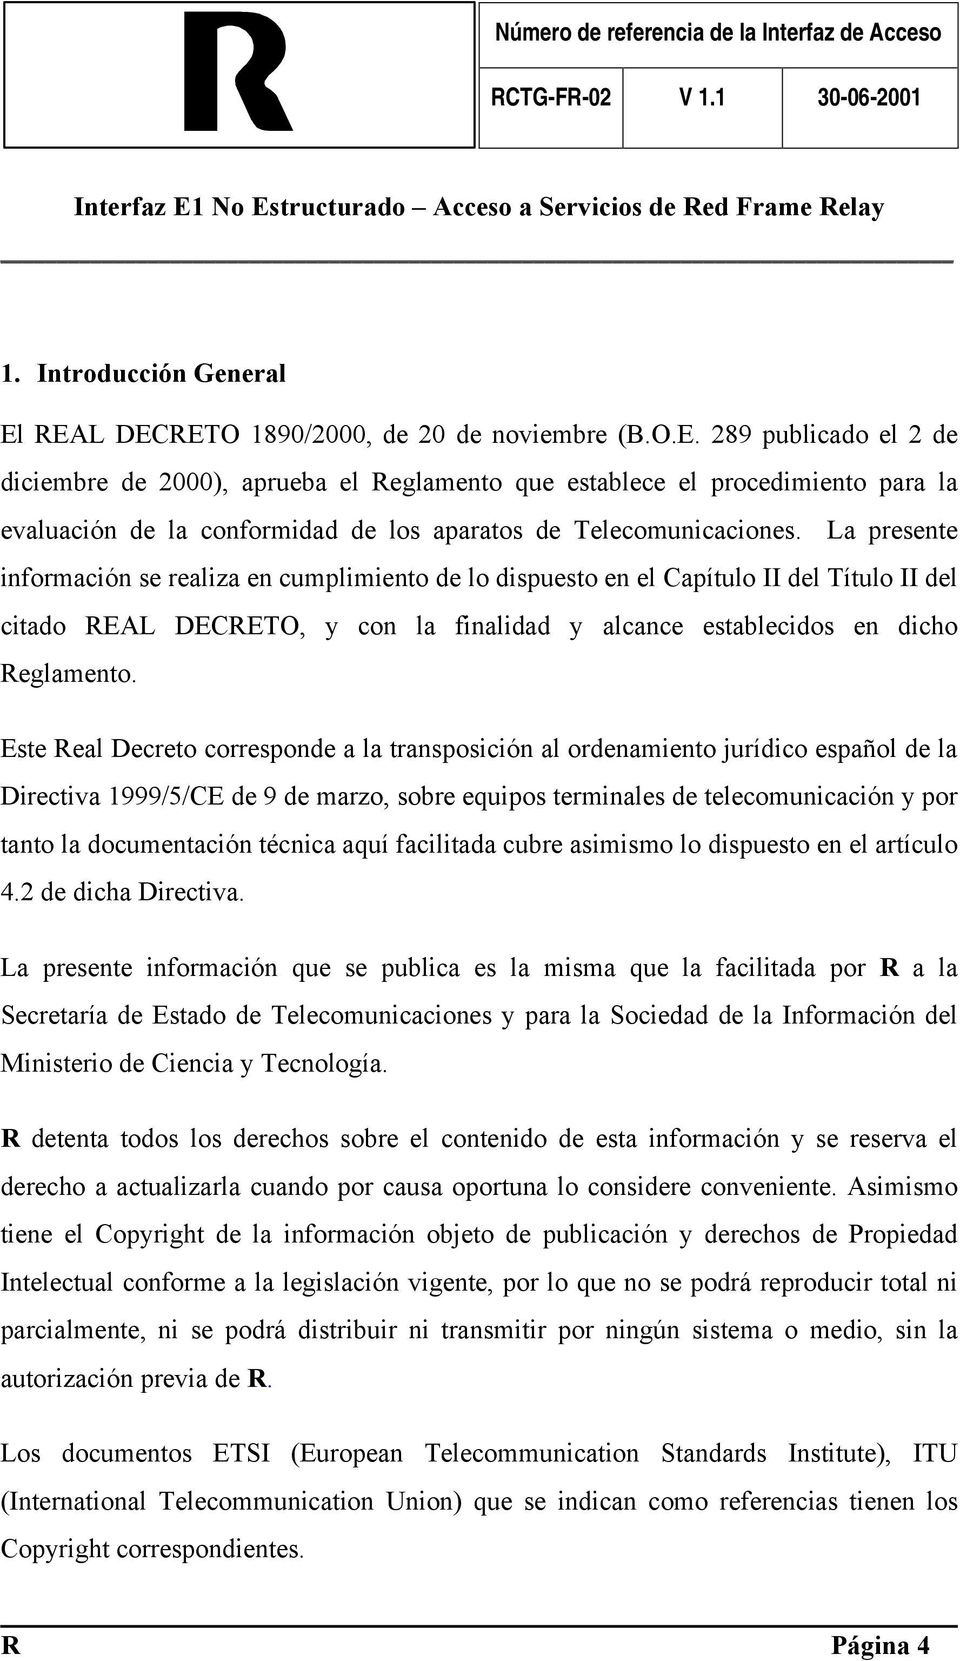 Este Real Decreto corresponde a la transposición al ordenamiento jurídico español de la Directiva 1999/5/CE de 9 de marzo, sobre equipos terminales de telecomunicación y por tanto la documentación